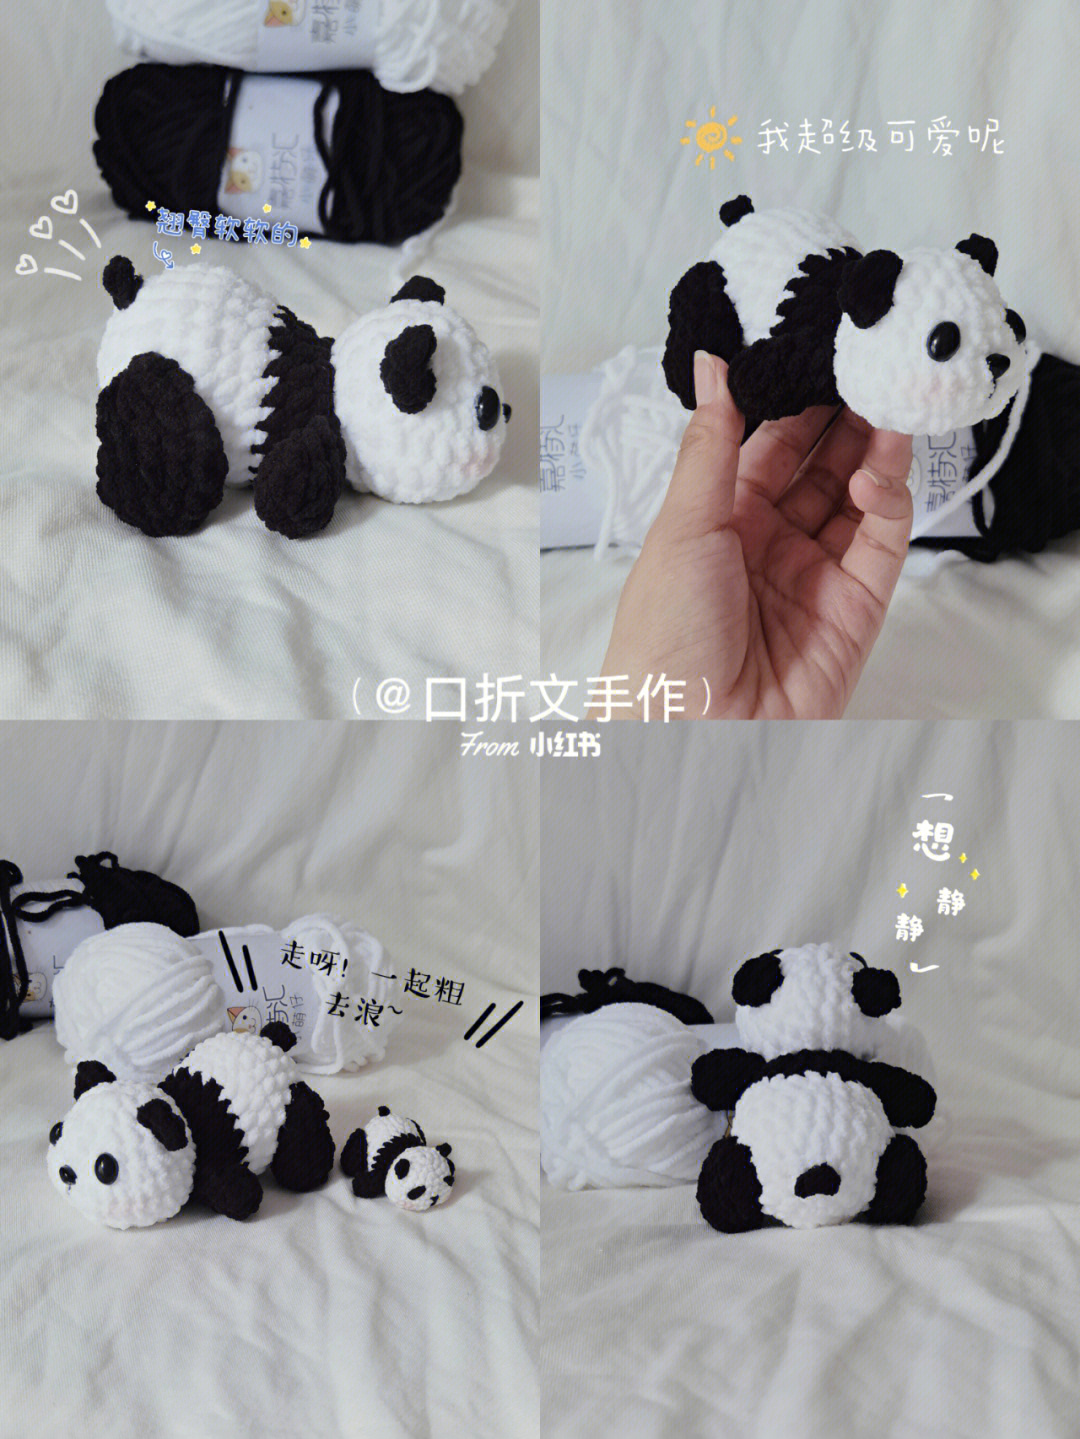 毛线熊猫 的编织方法图片